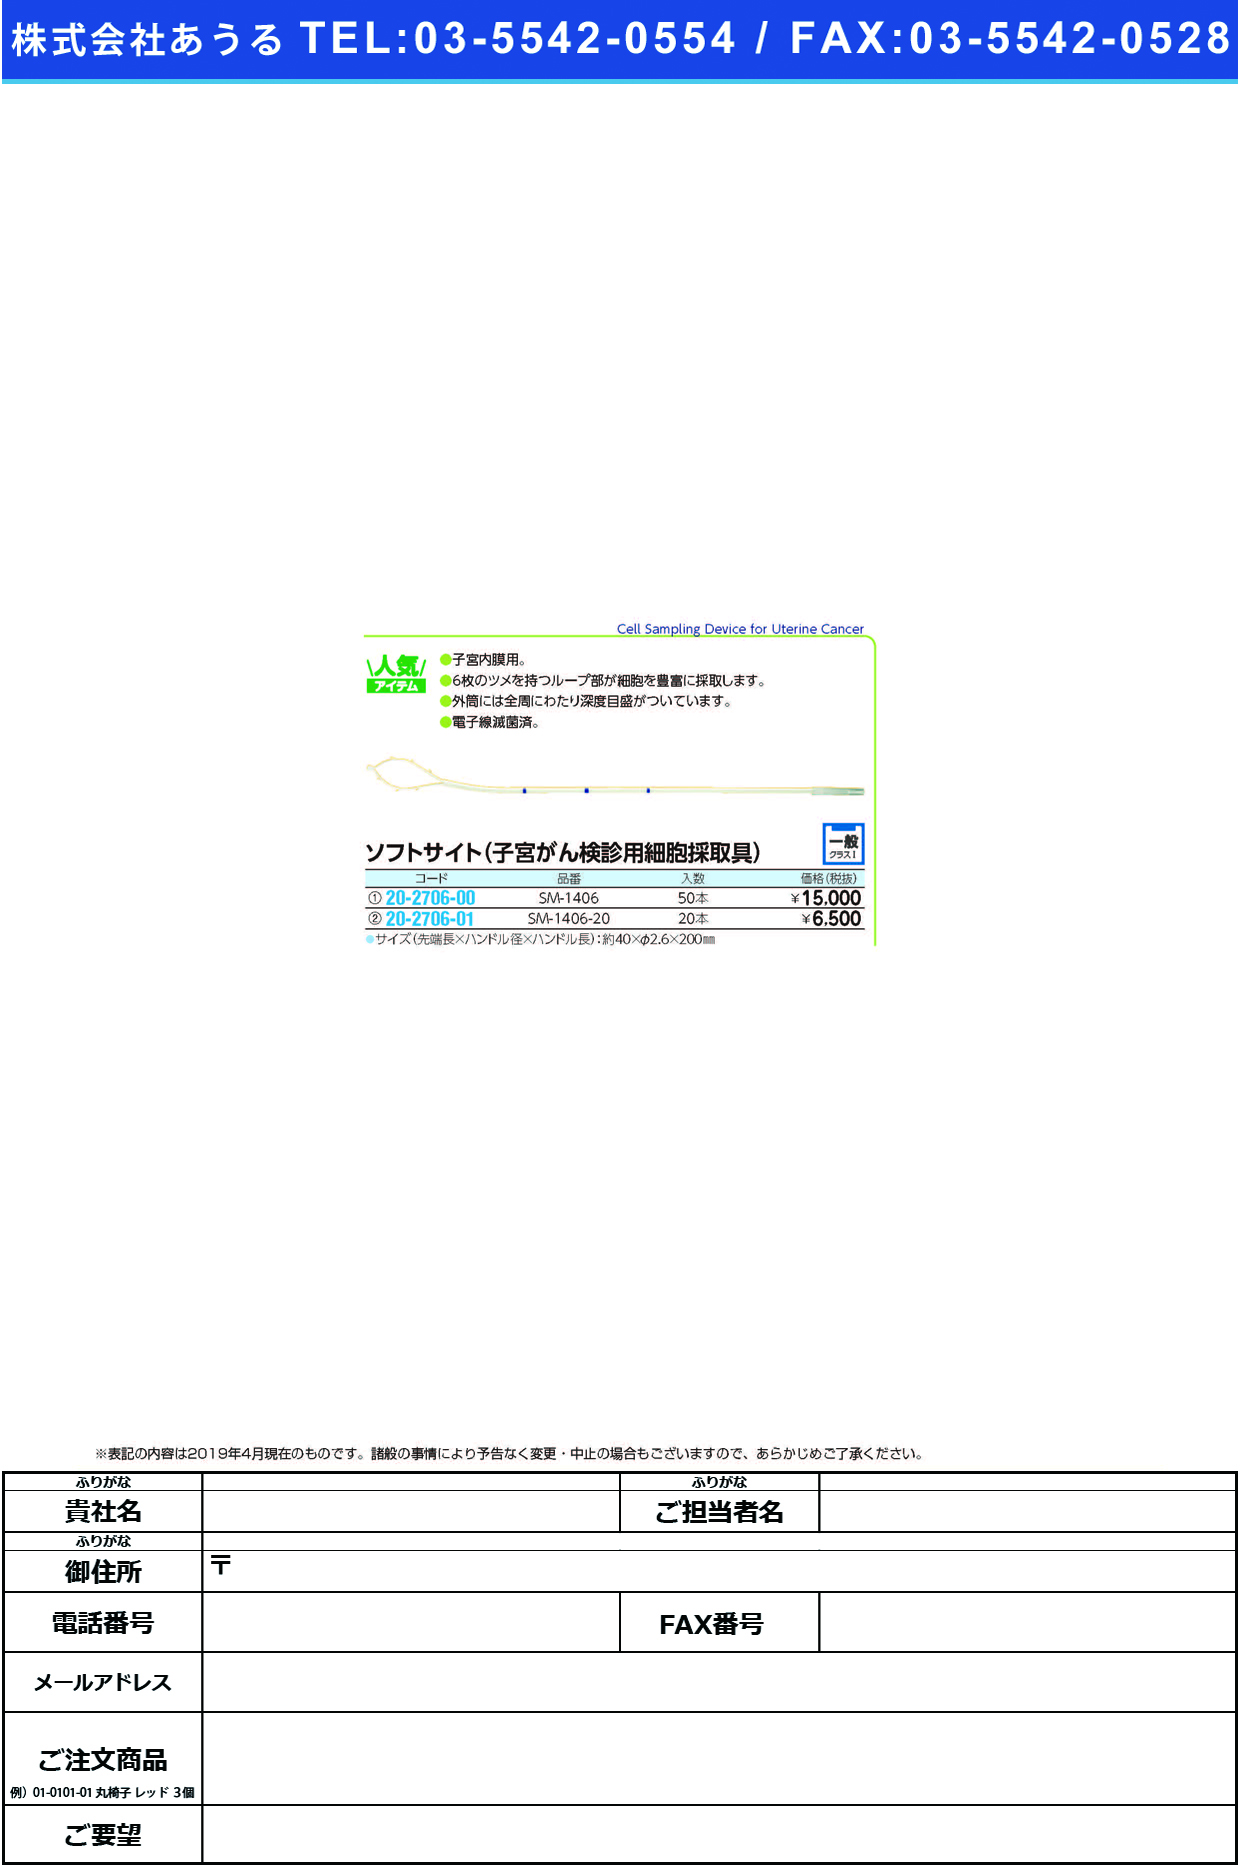 (20-2706-01)ソフトサイト SM-1406-20(20ﾎﾟﾝｲﾘ) ｿﾌﾄｻｲﾄ(ソフトメディカル)【1箱単位】【2019年カタログ商品】